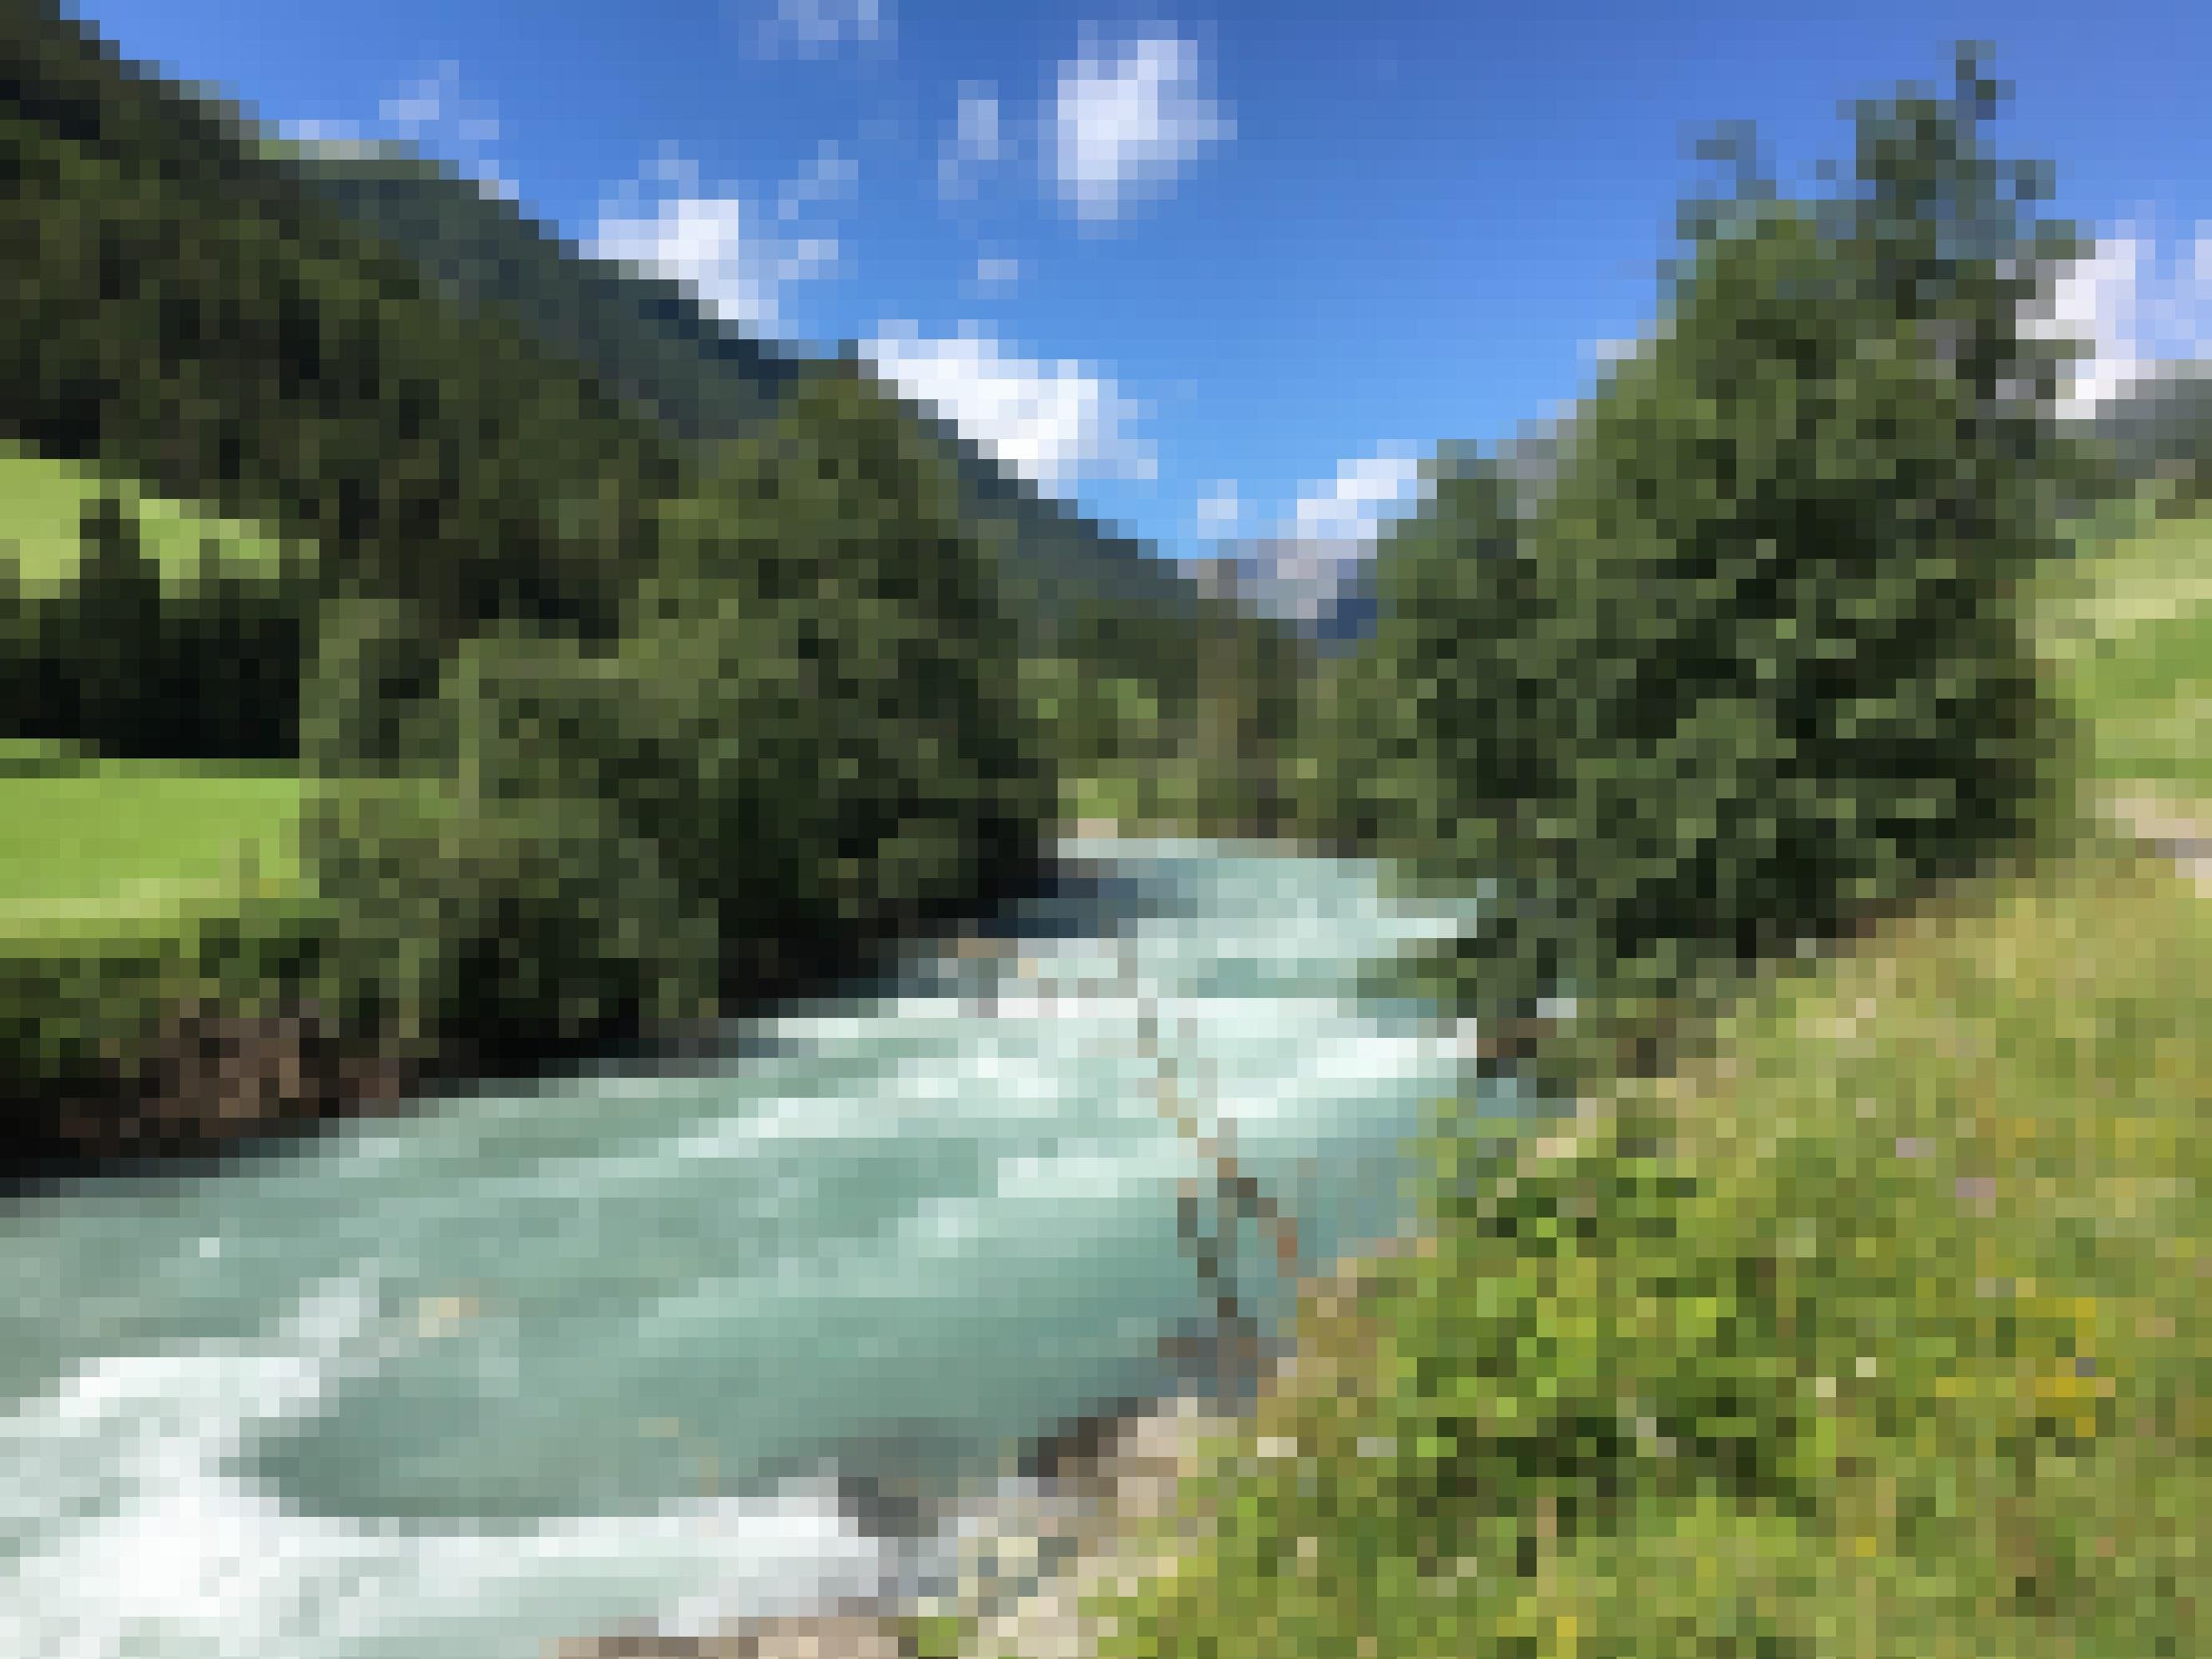 Türkisfarbener Fluss, blauer Himmel mit Wolken, grüne Landschaft